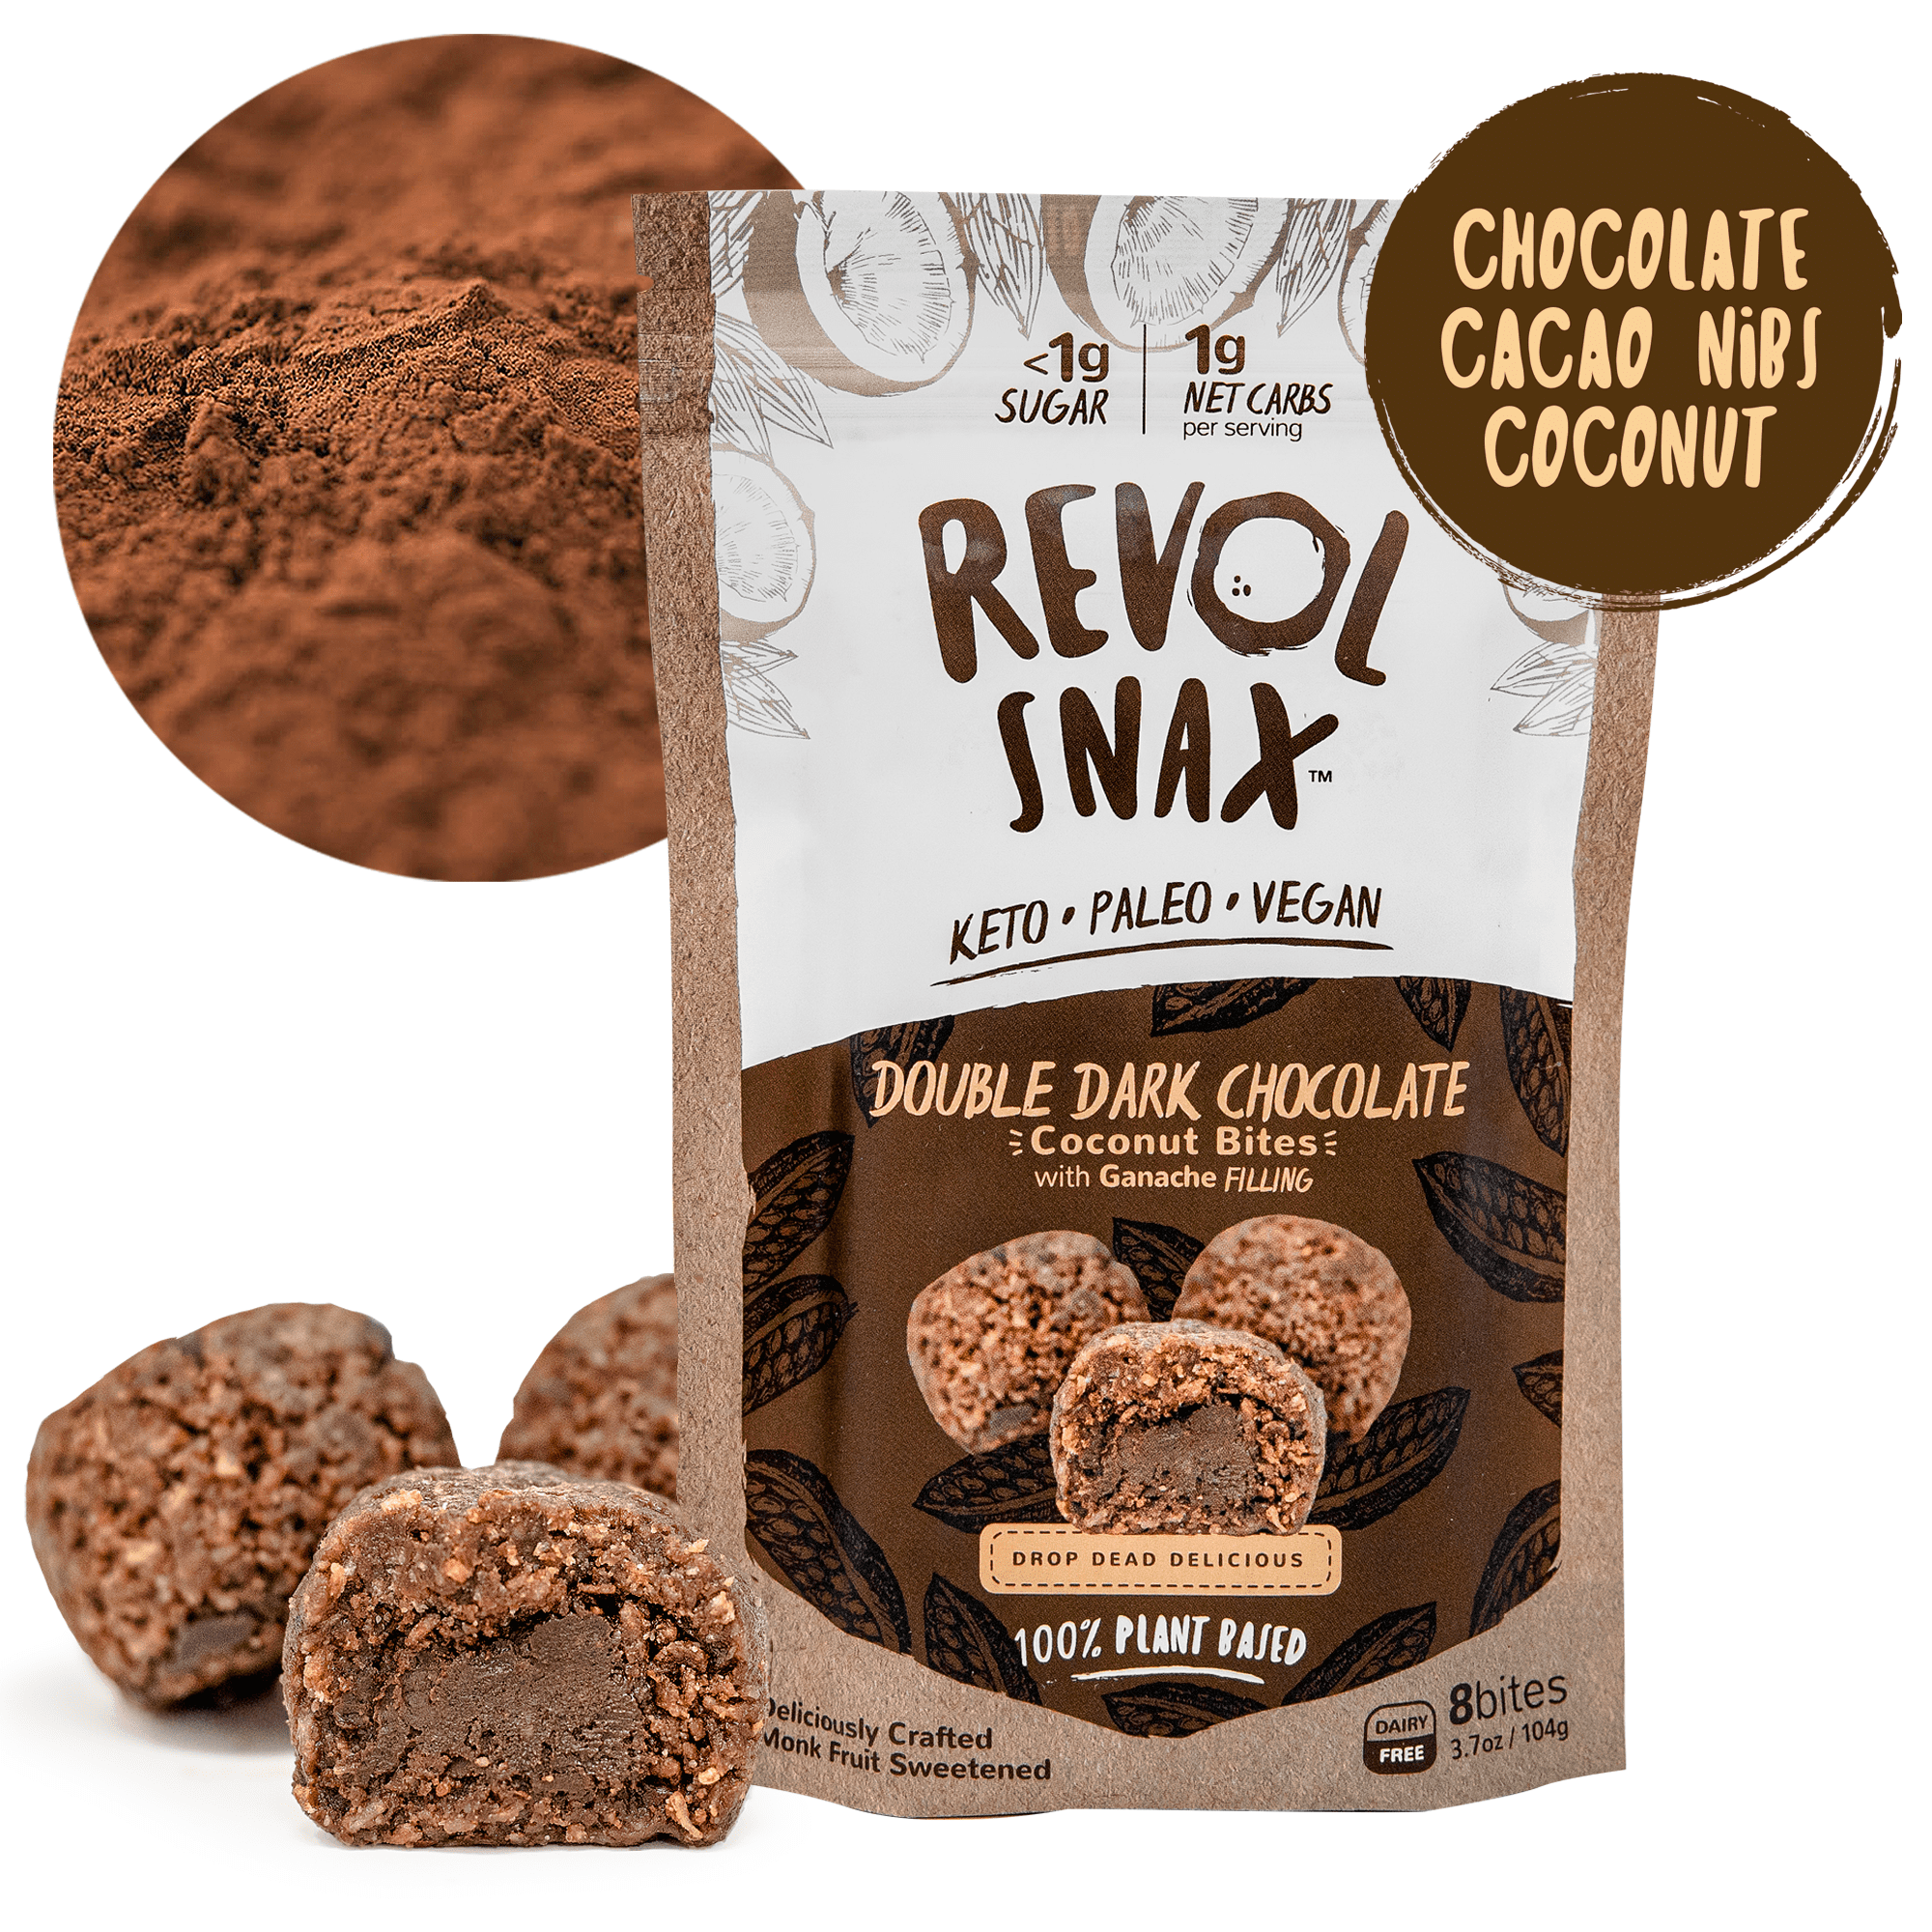 Revol Snax Double Dark Chocolate Coconut Bites 6 units per case 3.7 oz